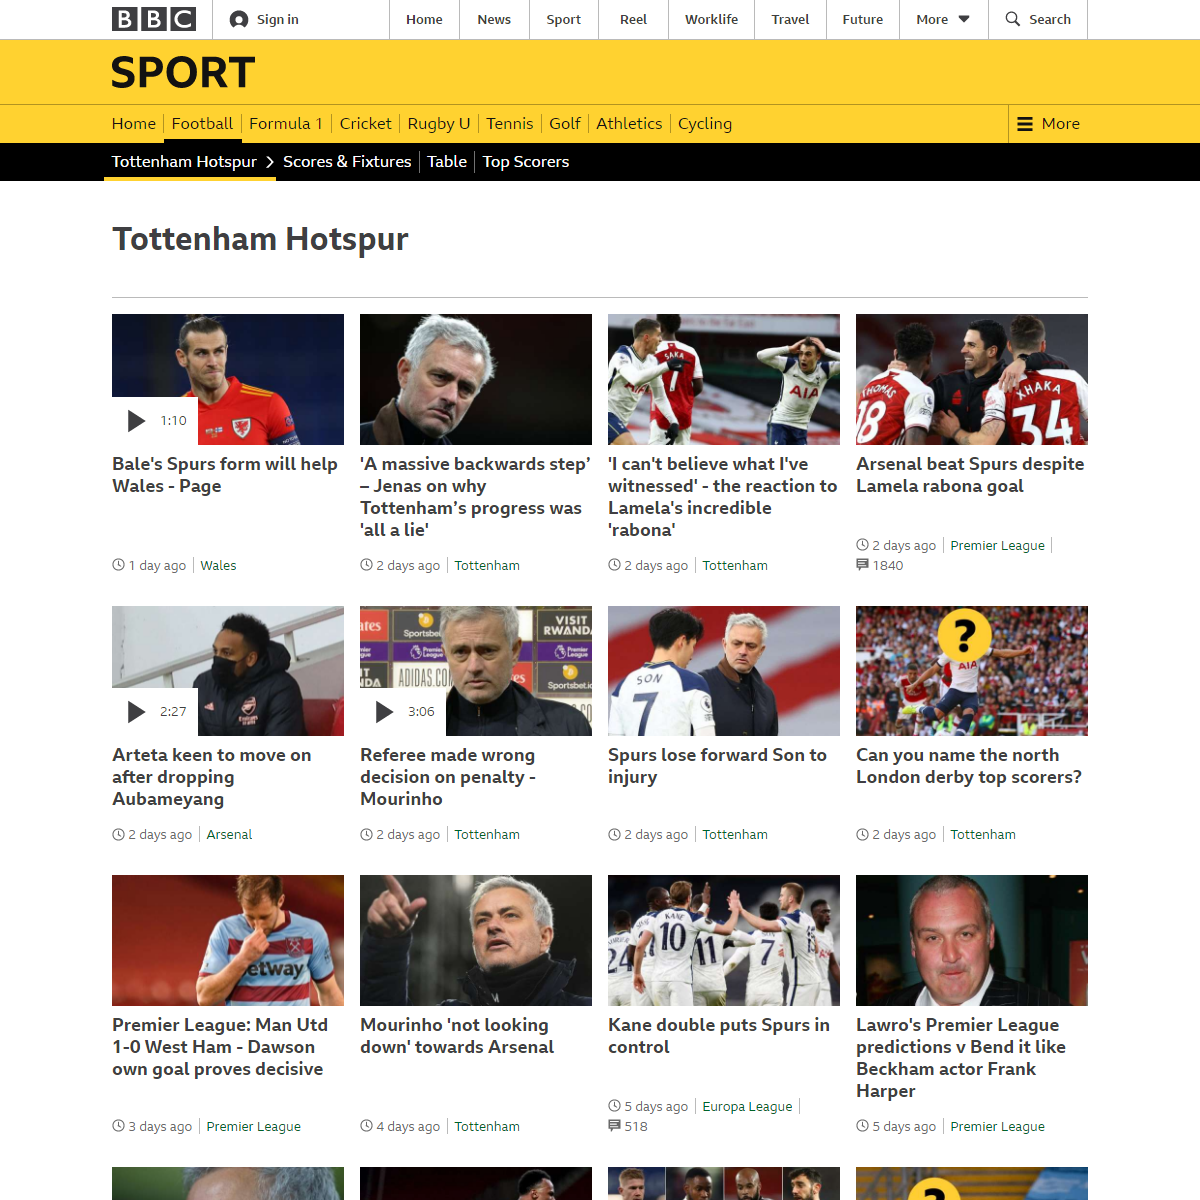 A complete backup of https://www.bbc.com/sport/football/teams/tottenham-hotspur